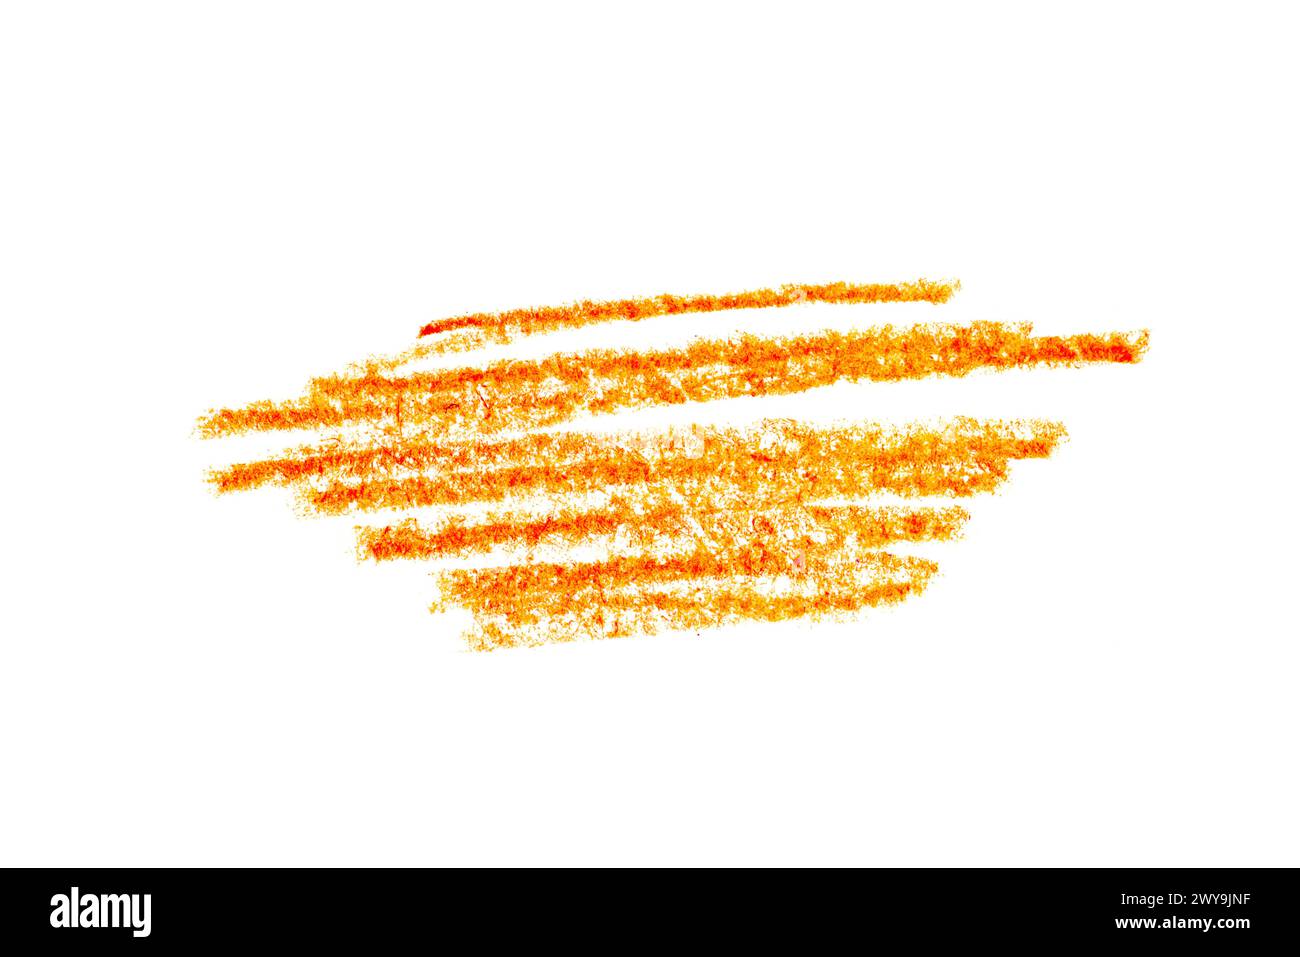 Une photo d'un trait de crayon orange artistique sur toile blanche. Banque D'Images